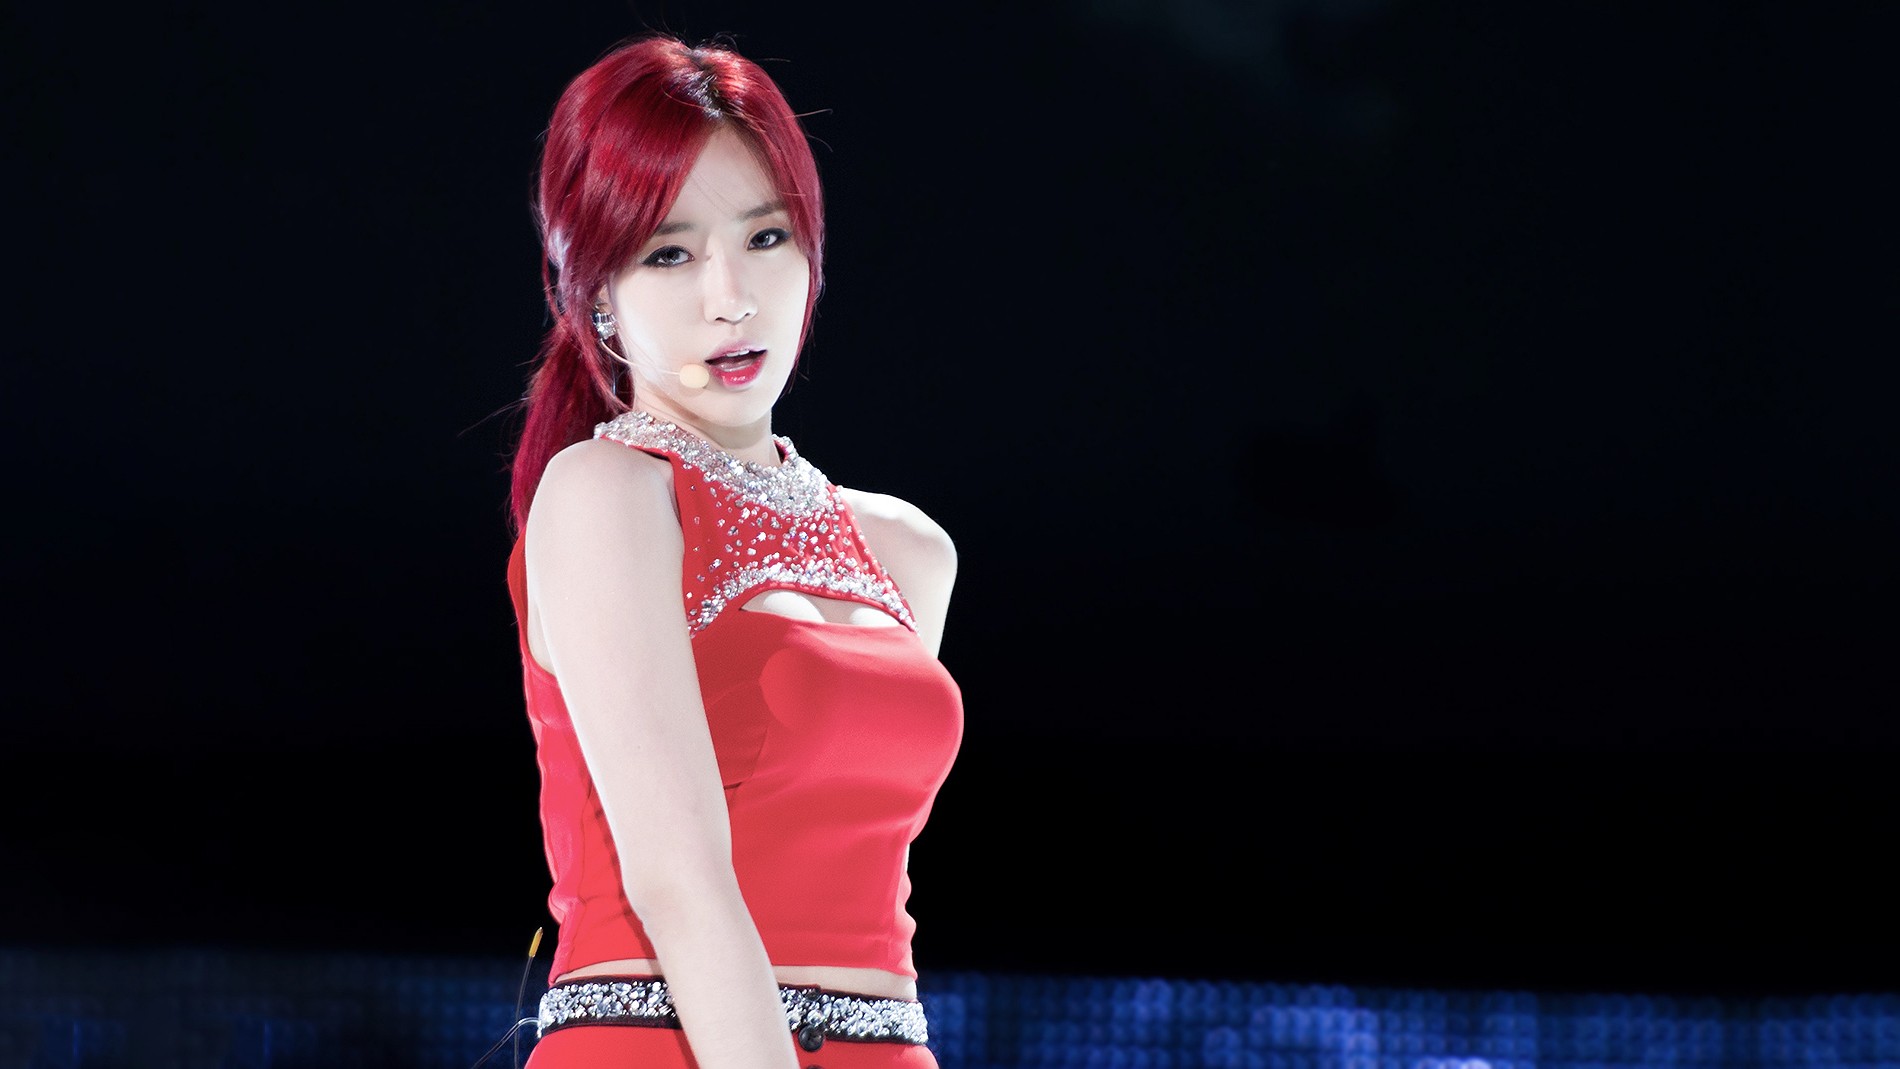 People 1900x1069 K-pop T-ara Eunjung Asian redhead singer halter top Korean women makeup dyed hair red clothing women music